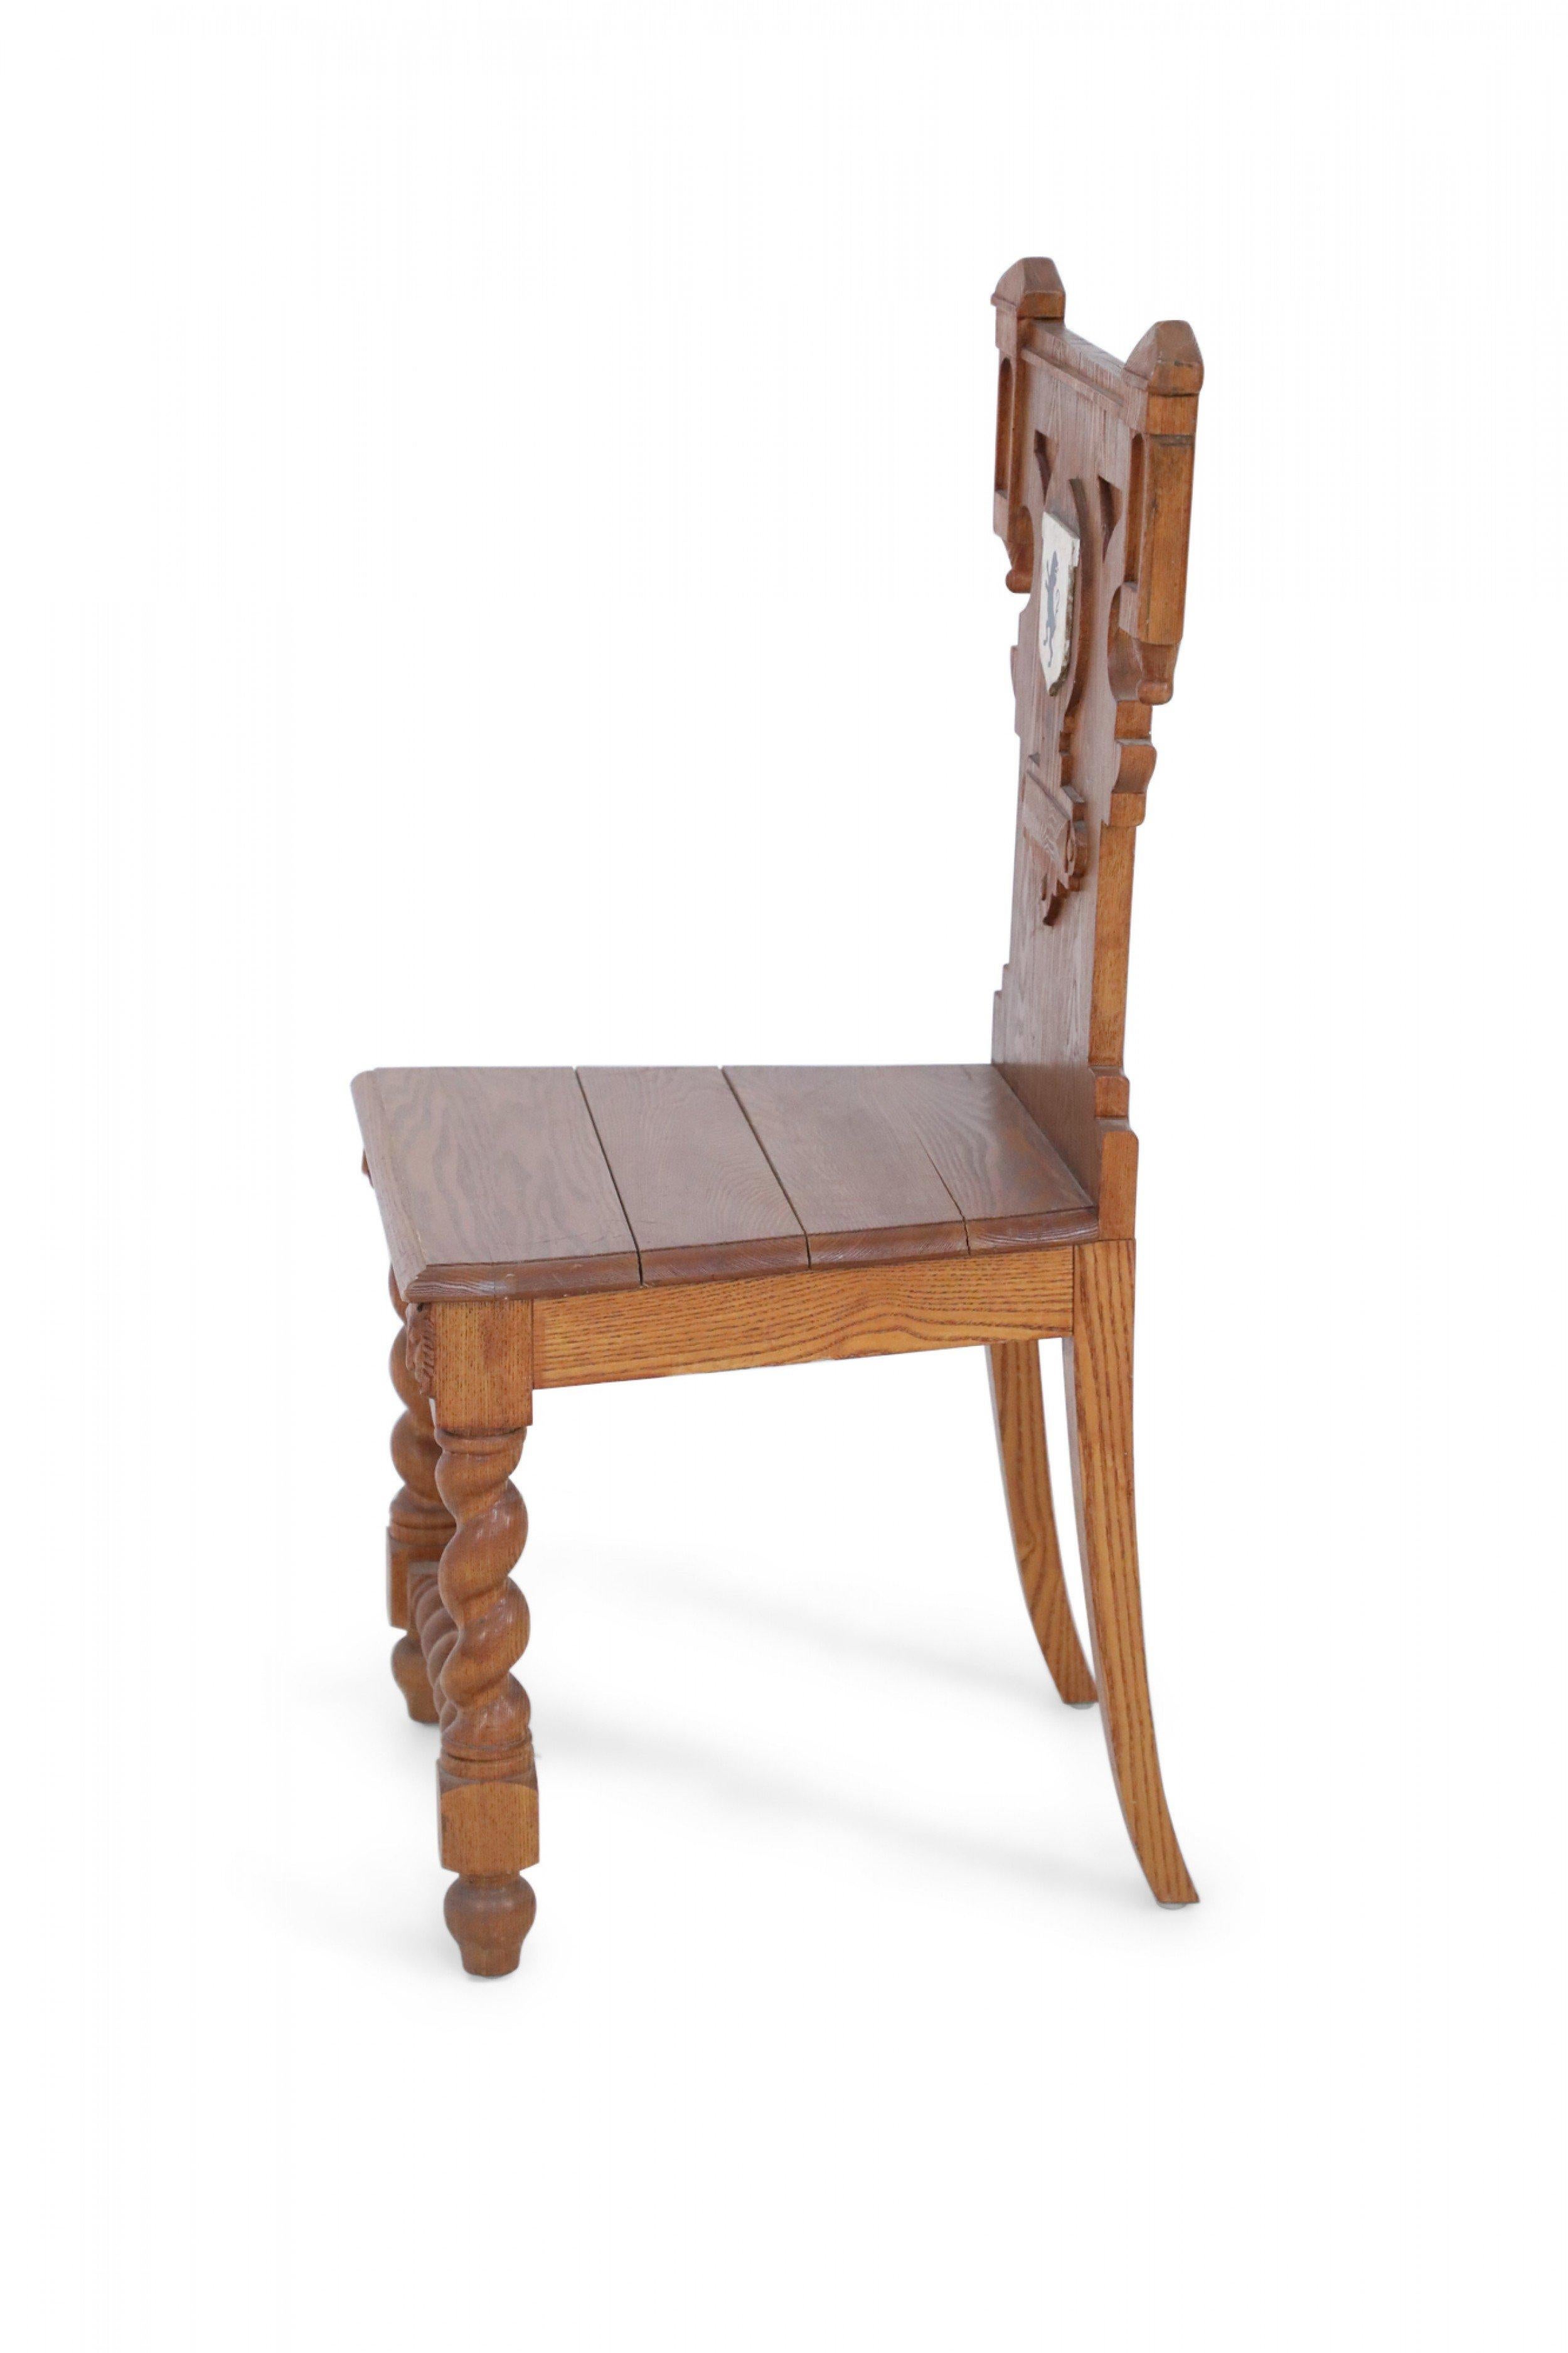 Chaise en bois sculpté de style Renaissance italienne, avec des pieds avant et un châssis tournés en spirale, des pieds arrière en sabre et un dossier présentant une crête peinte en blanc avec un lion noir au centre.
 